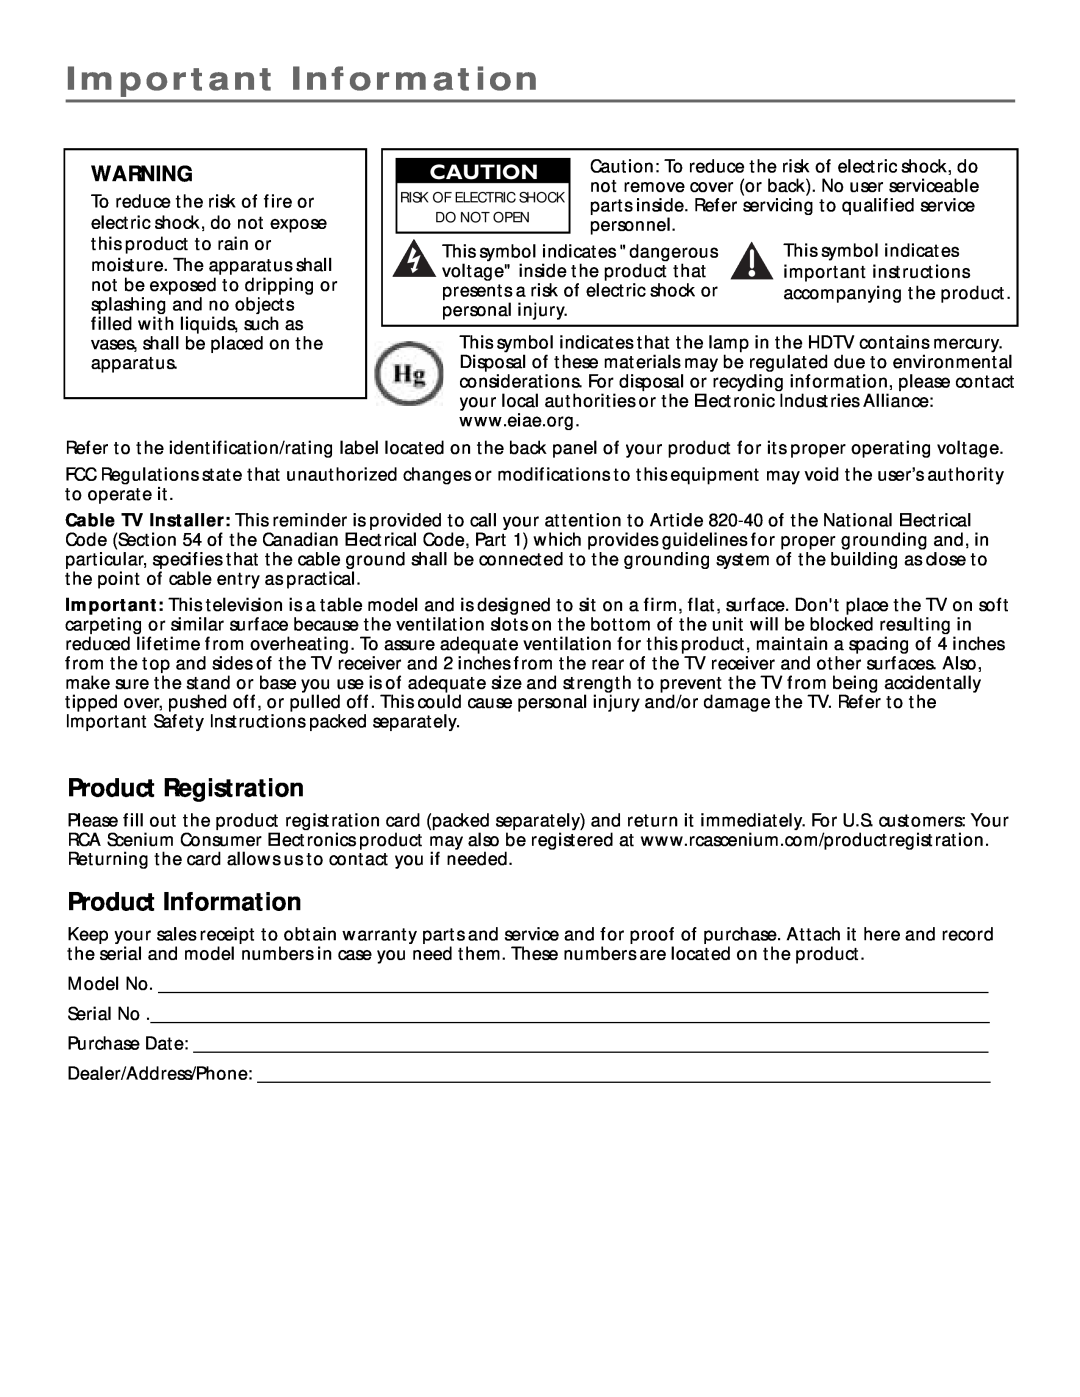 RCA scenium manual Important Information, Product Registration, Product Information 